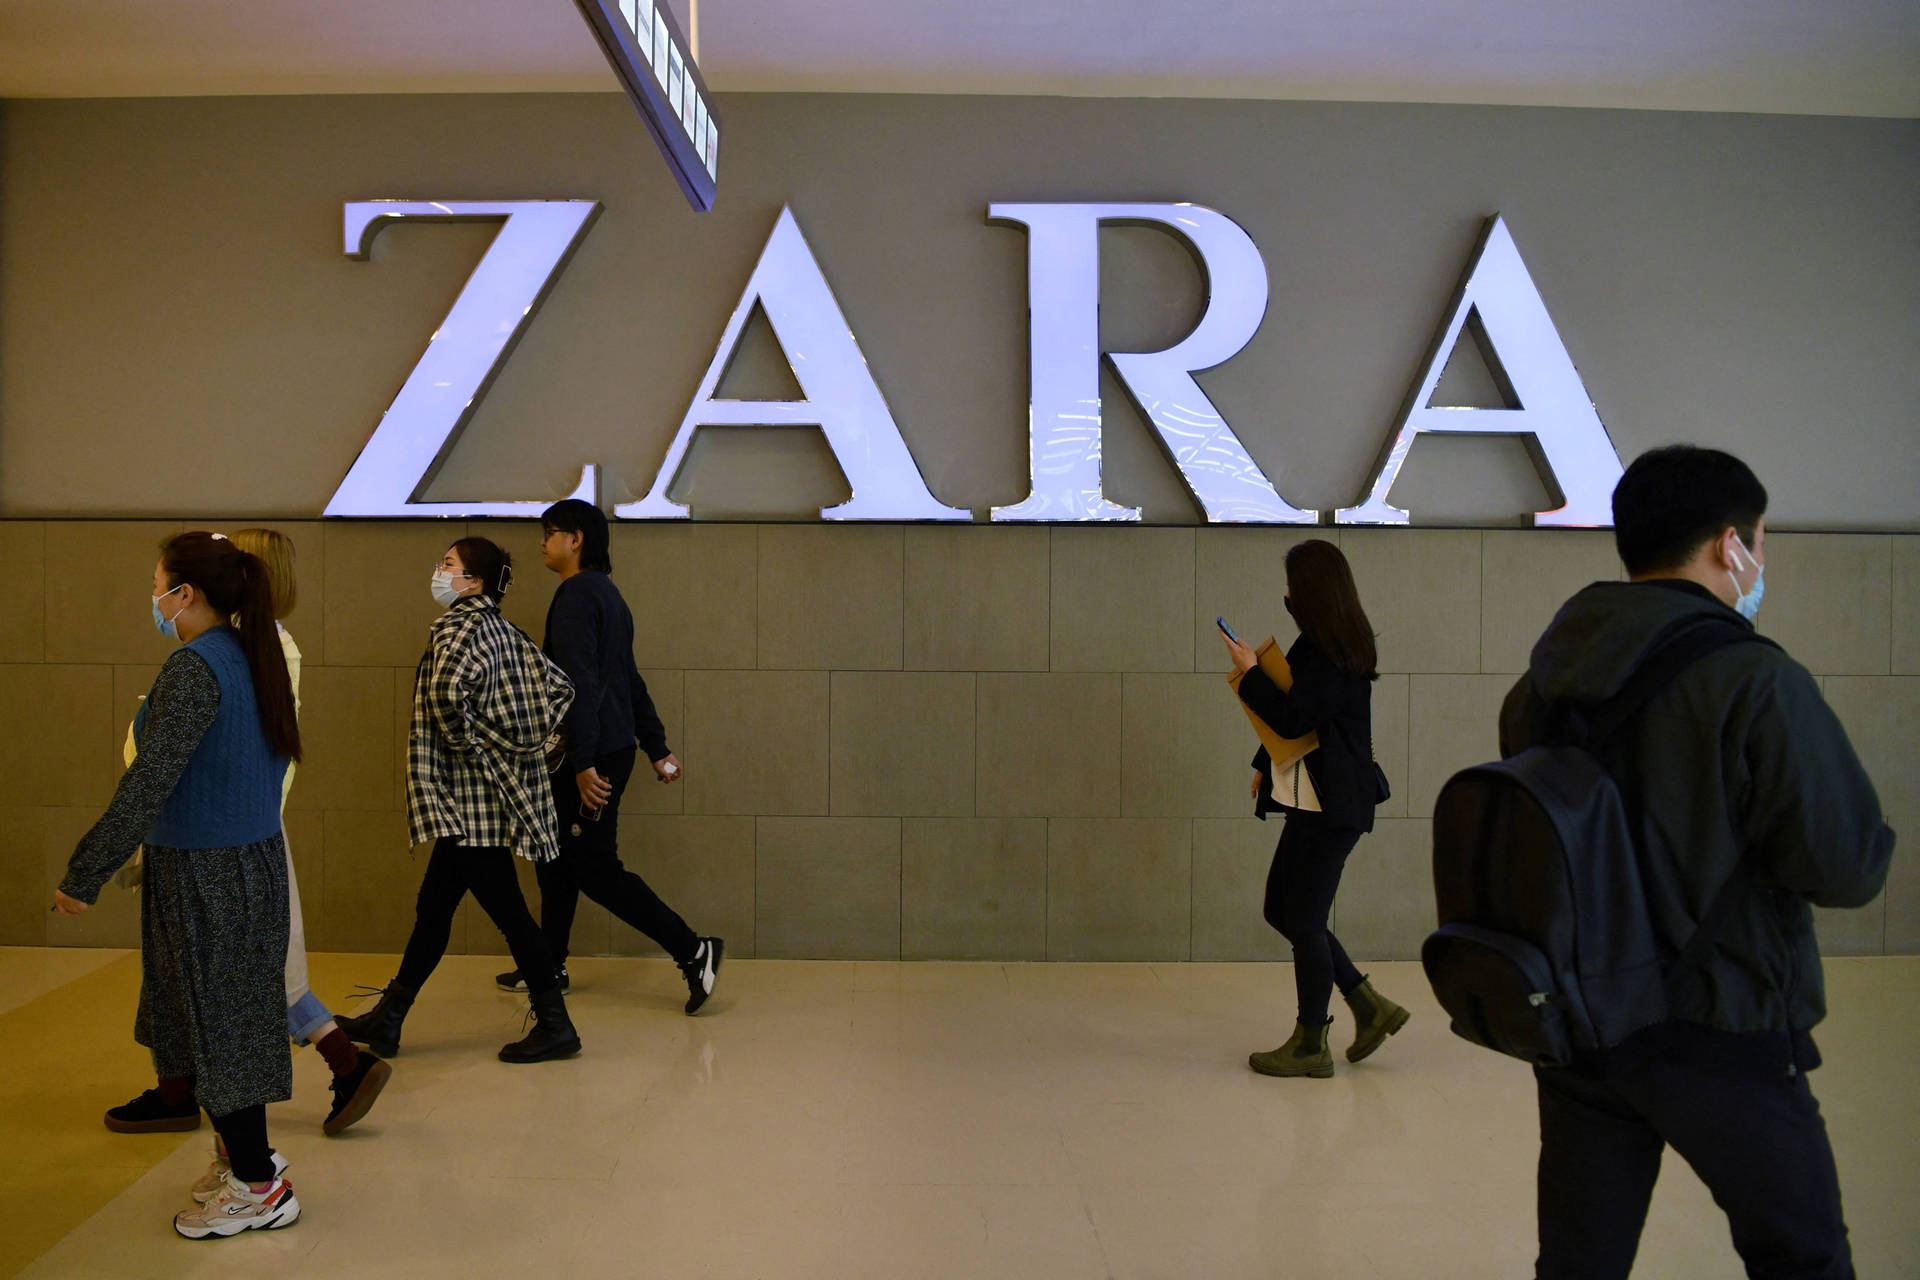 Zara Outlet Signage Background